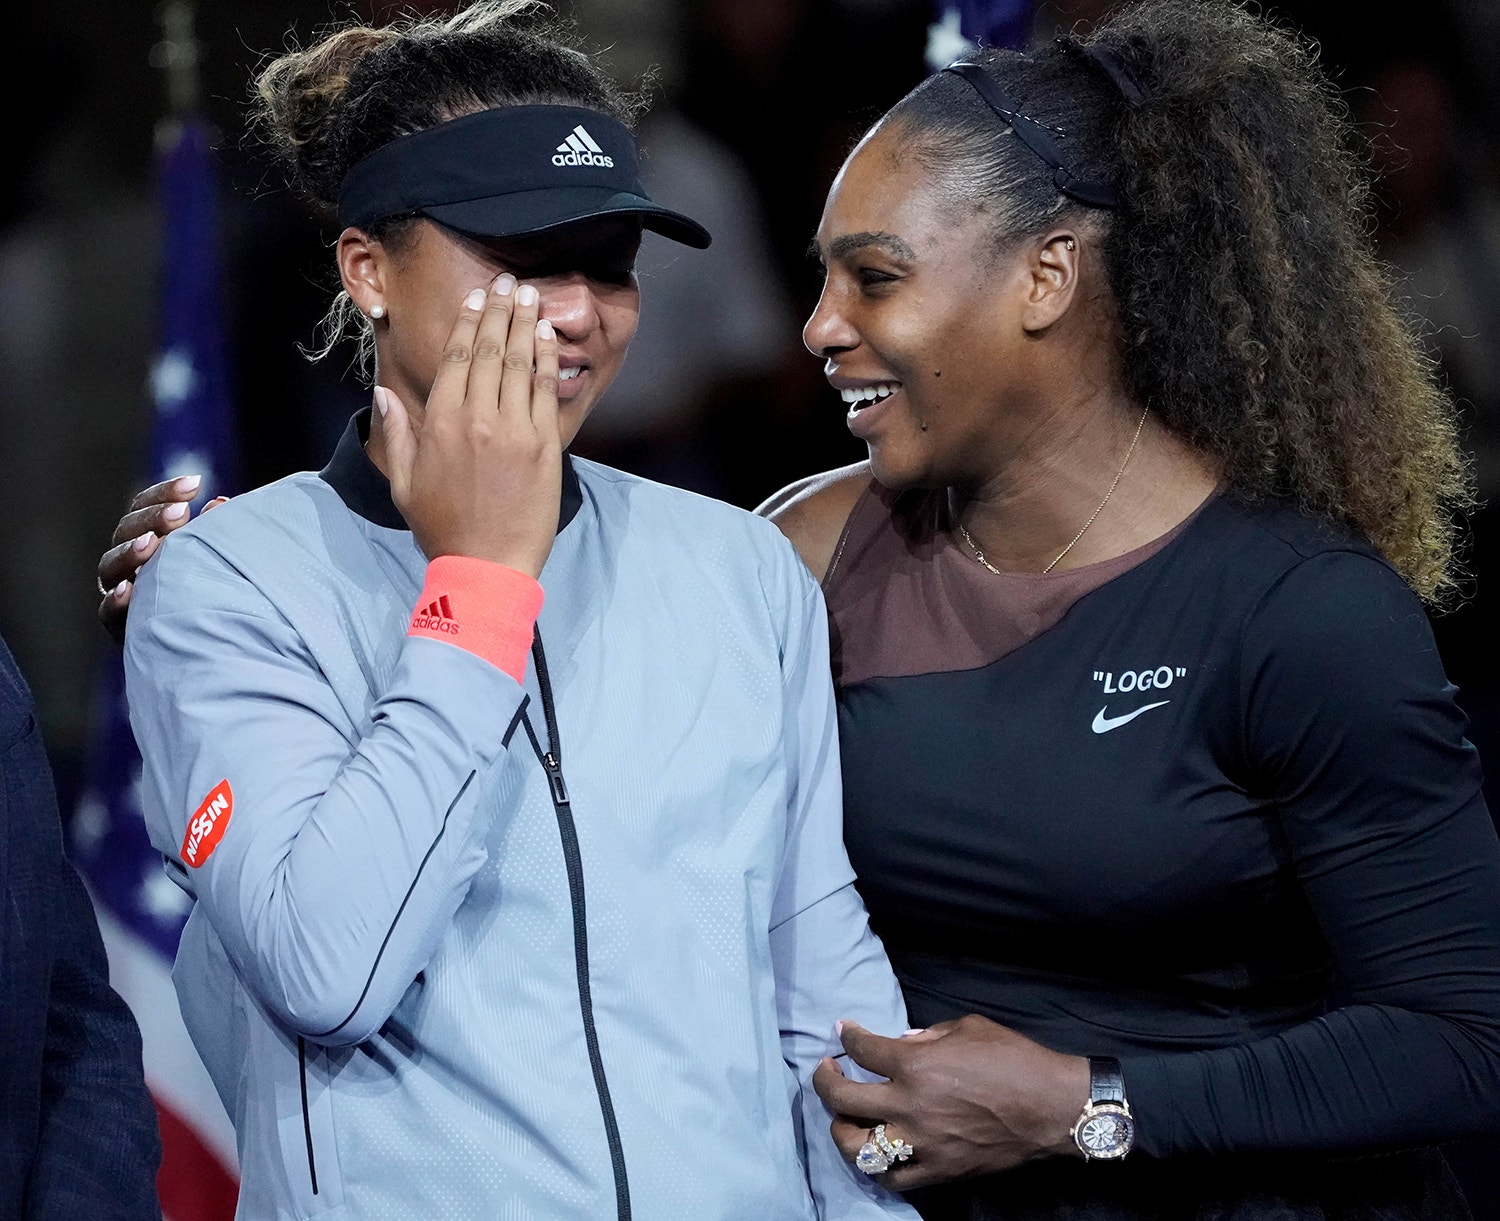  Naomi Osaka derrotou Serena Williams na final do US Open /USA Today Sports via Reuters 